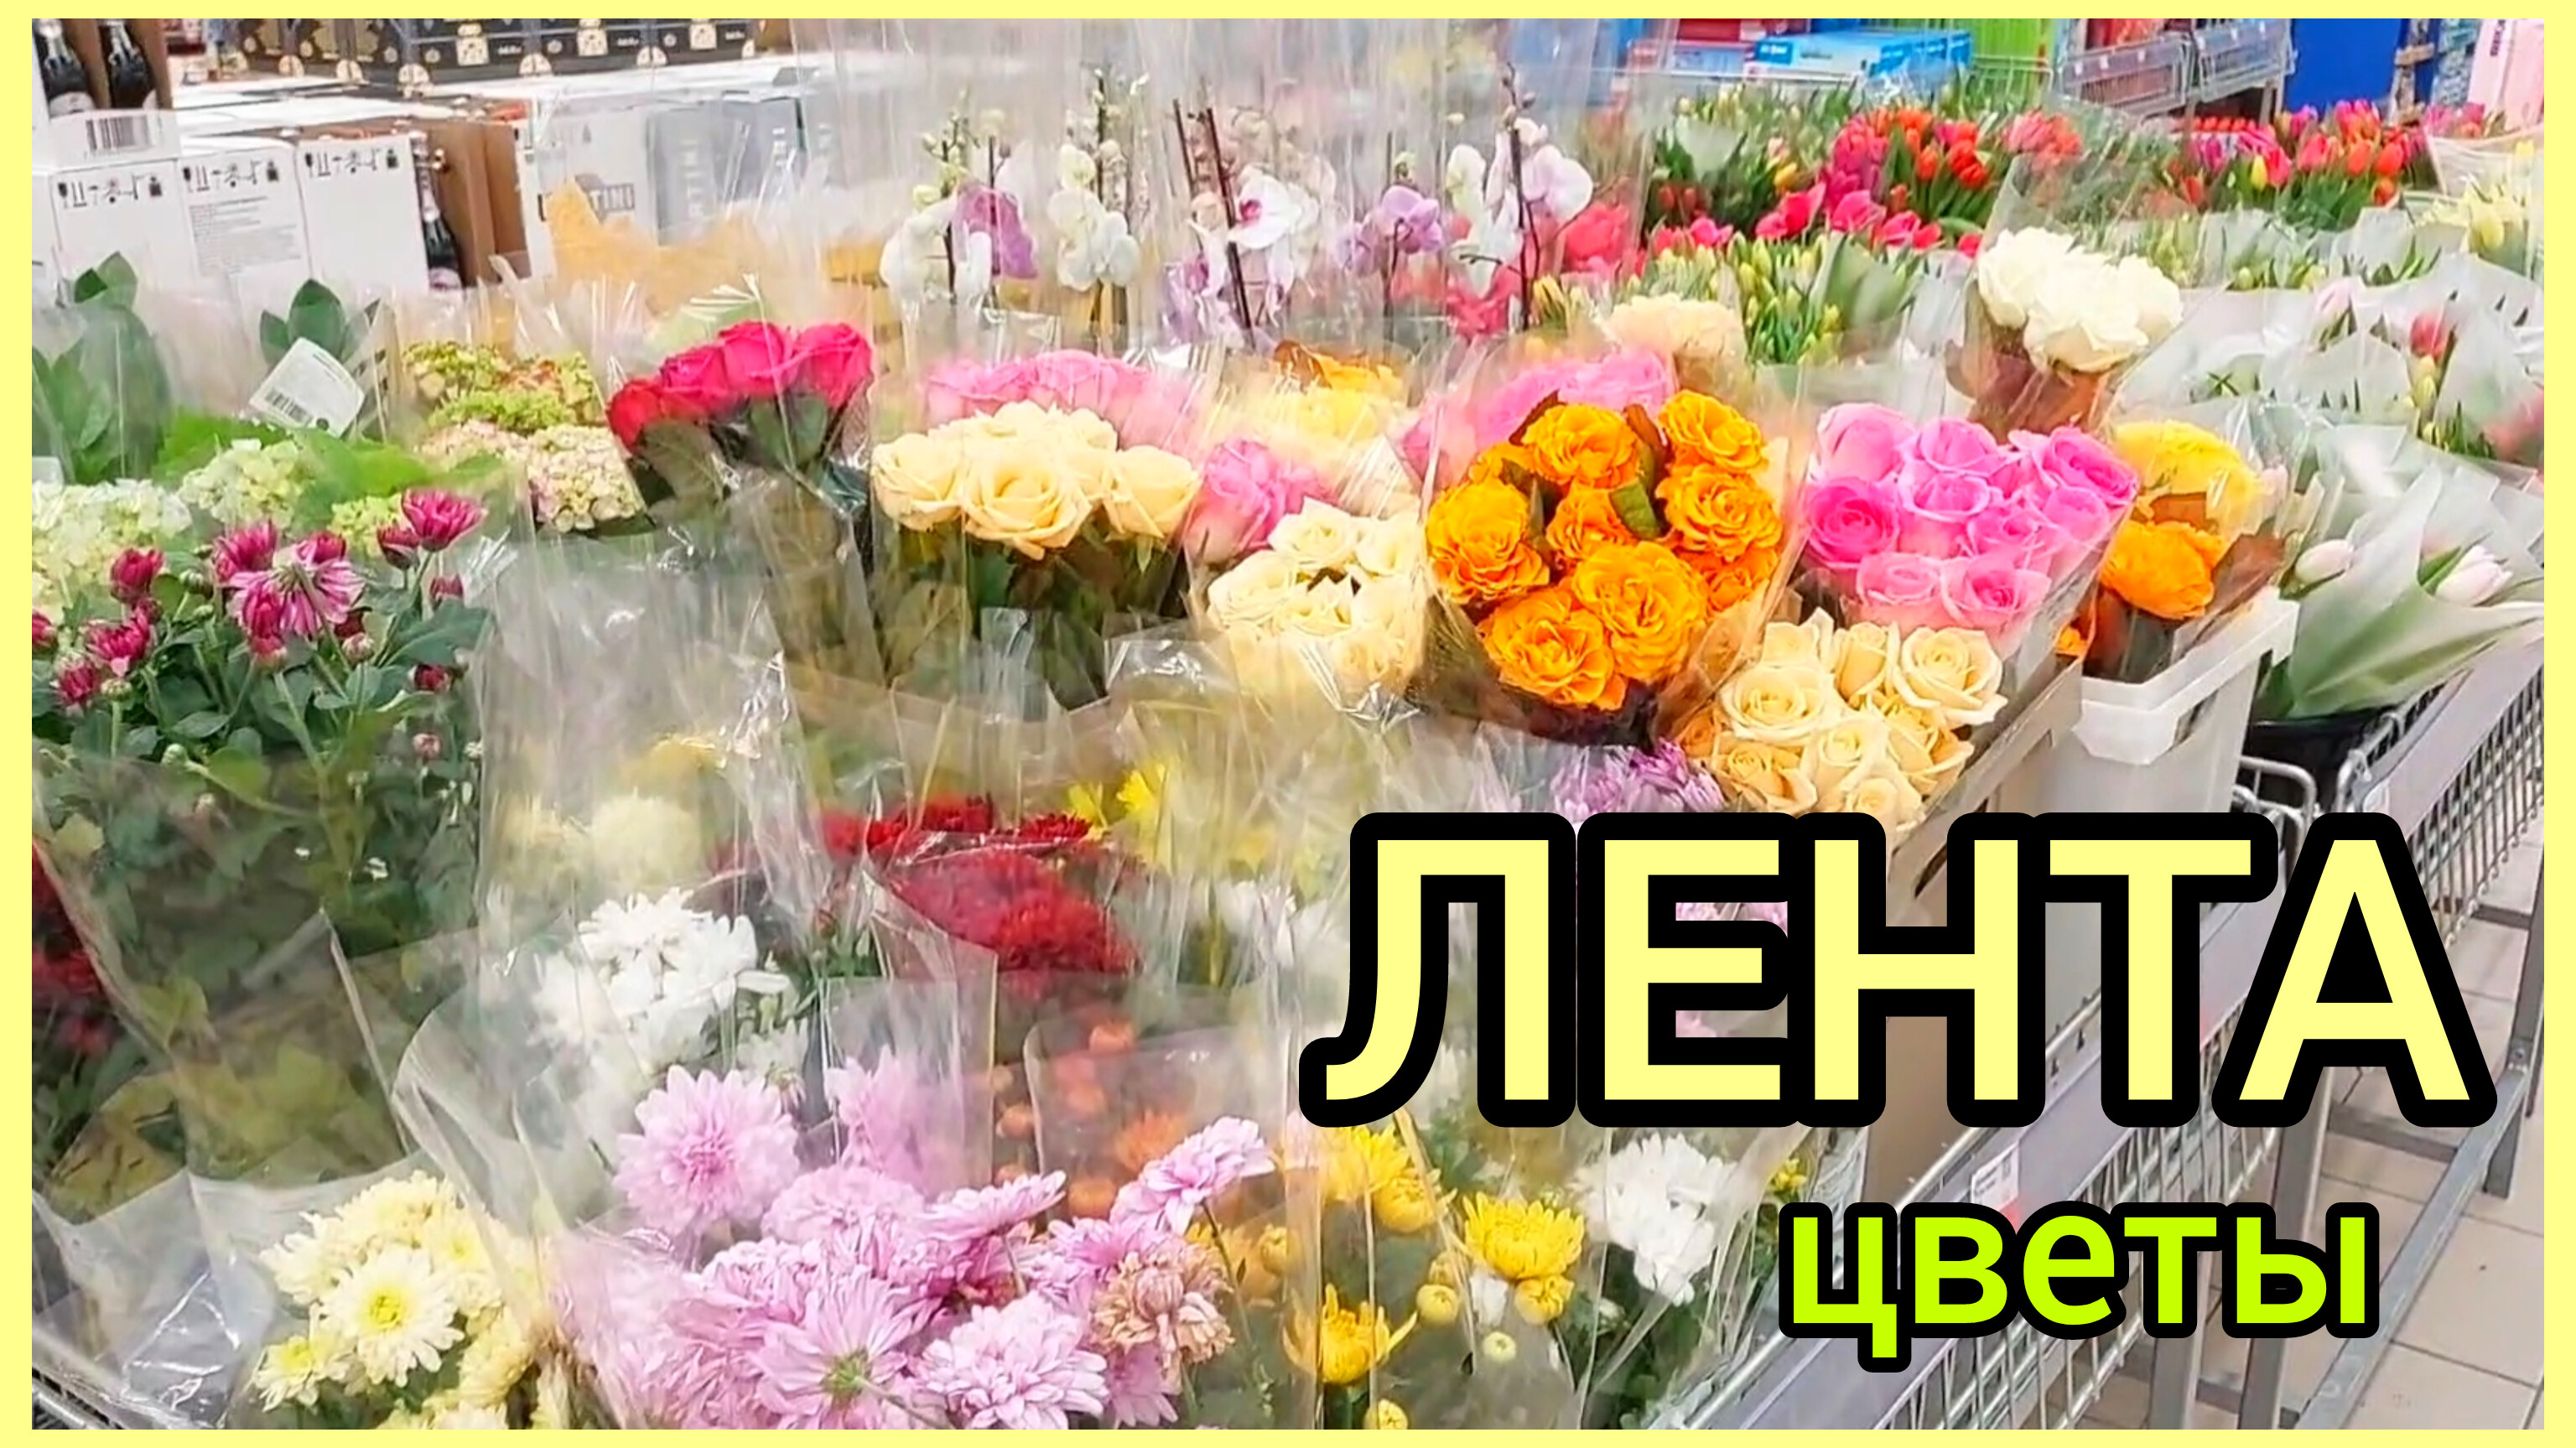 4.03.24 #Цветы в ЛЕНТЕ? #ОБЗОР ?Букеты? #орхидеи ? #тюльпаны #растения #розы ? #Липецк